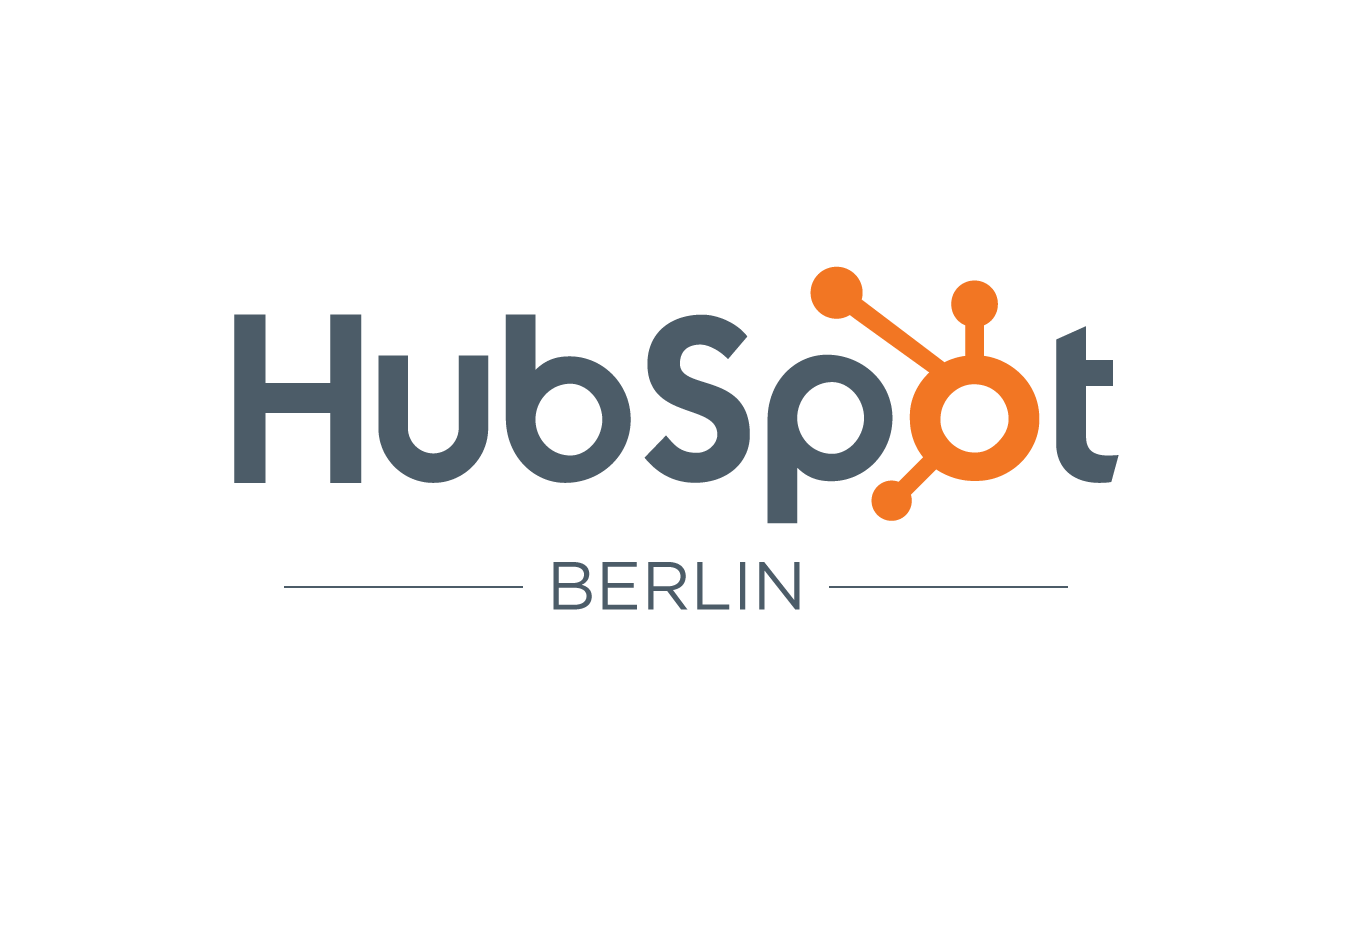 HubSpot to Open Second EMEA Office in Berlin, Germany in 2017